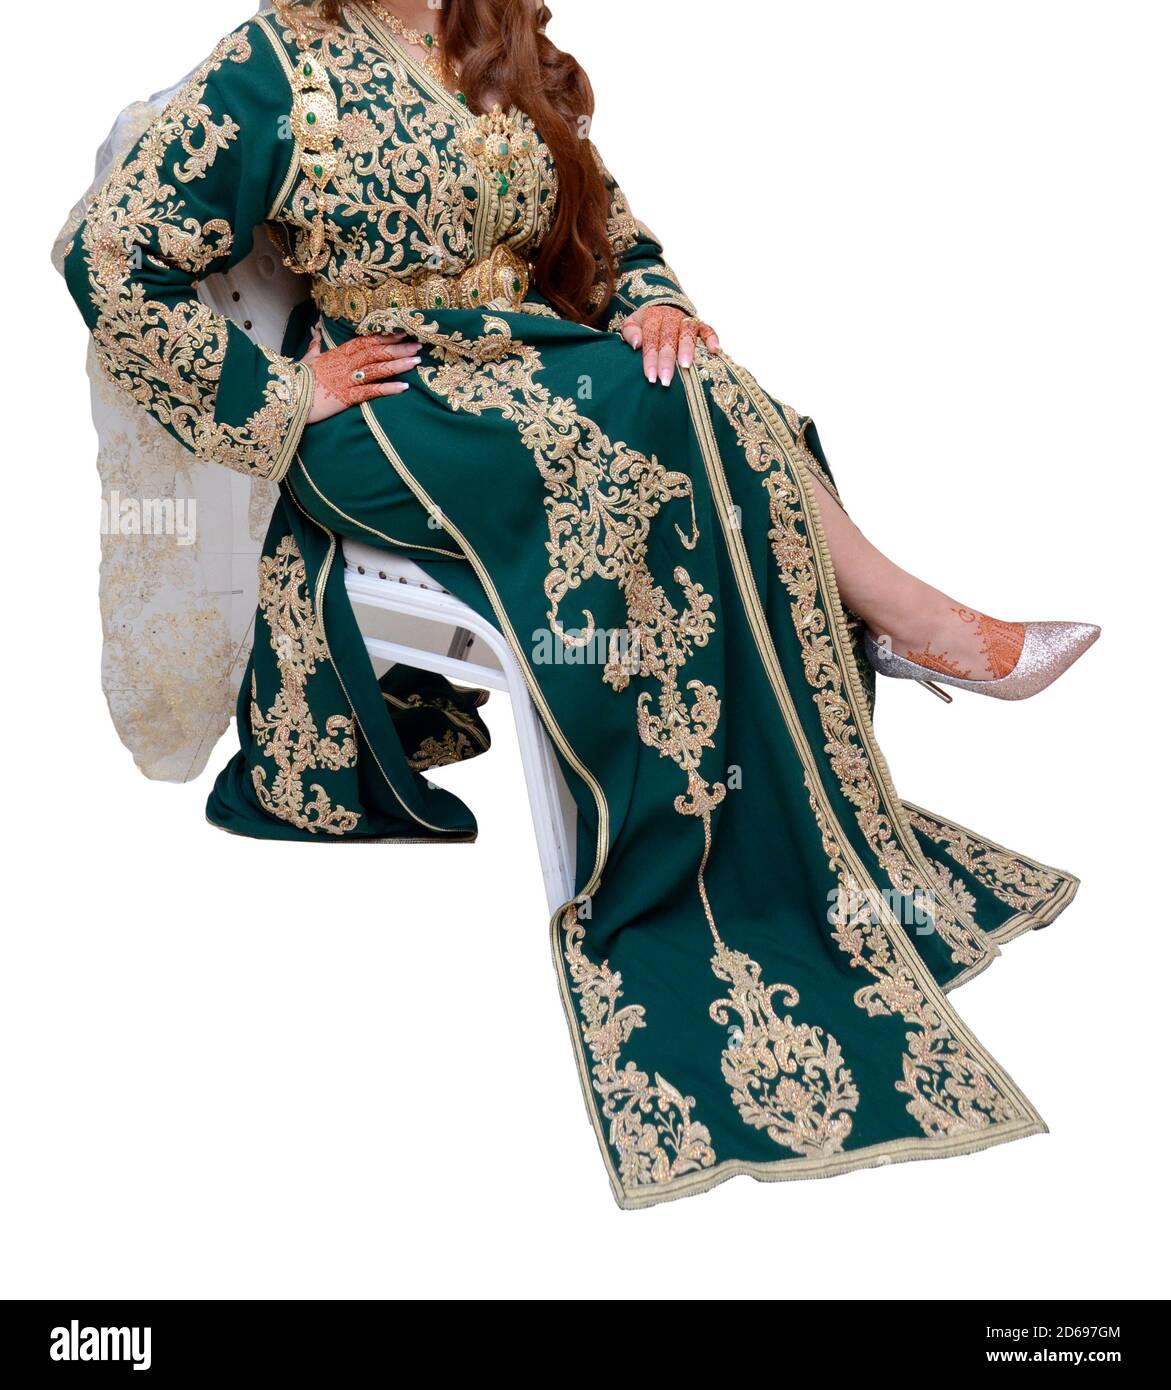 Robe traditionnelle marocaine. Mariée portant un caftan vert orné de bijoux Banque D'Images